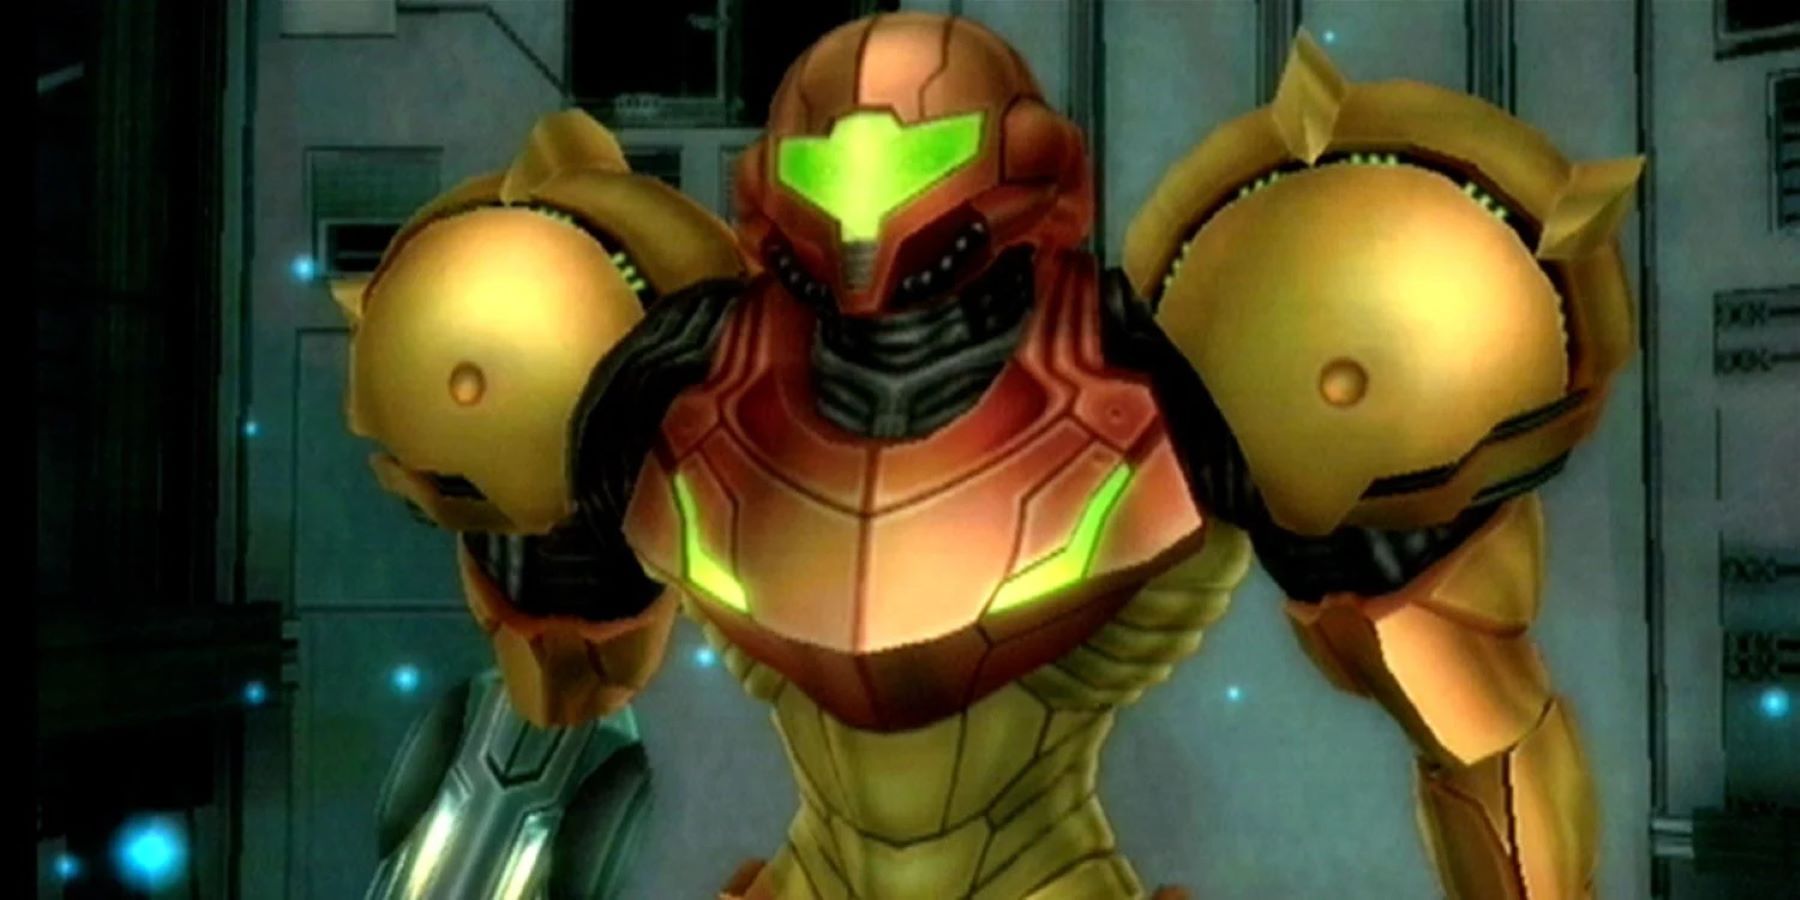 Samus Aran in a cutscene from Metroid Prime